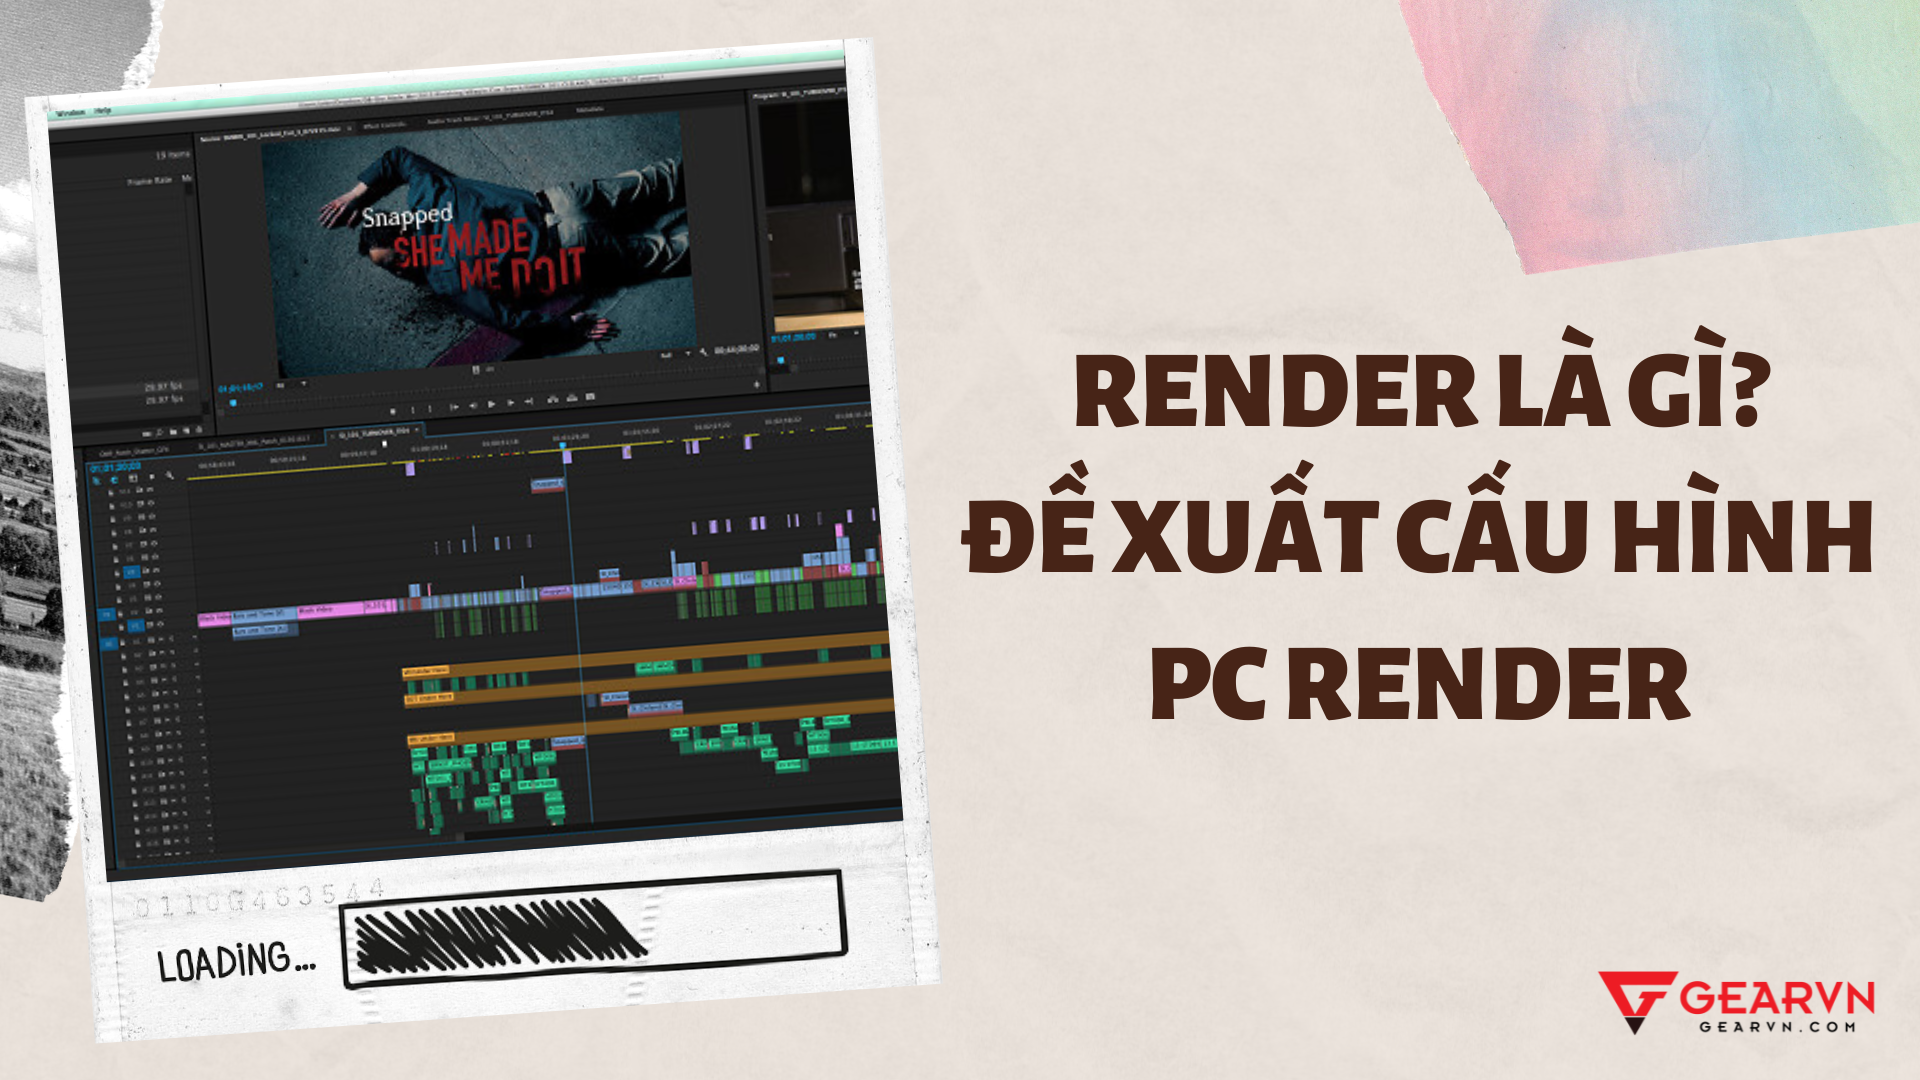 Render là gì? Cách chọn PC Render cực chuẩn cho content creator